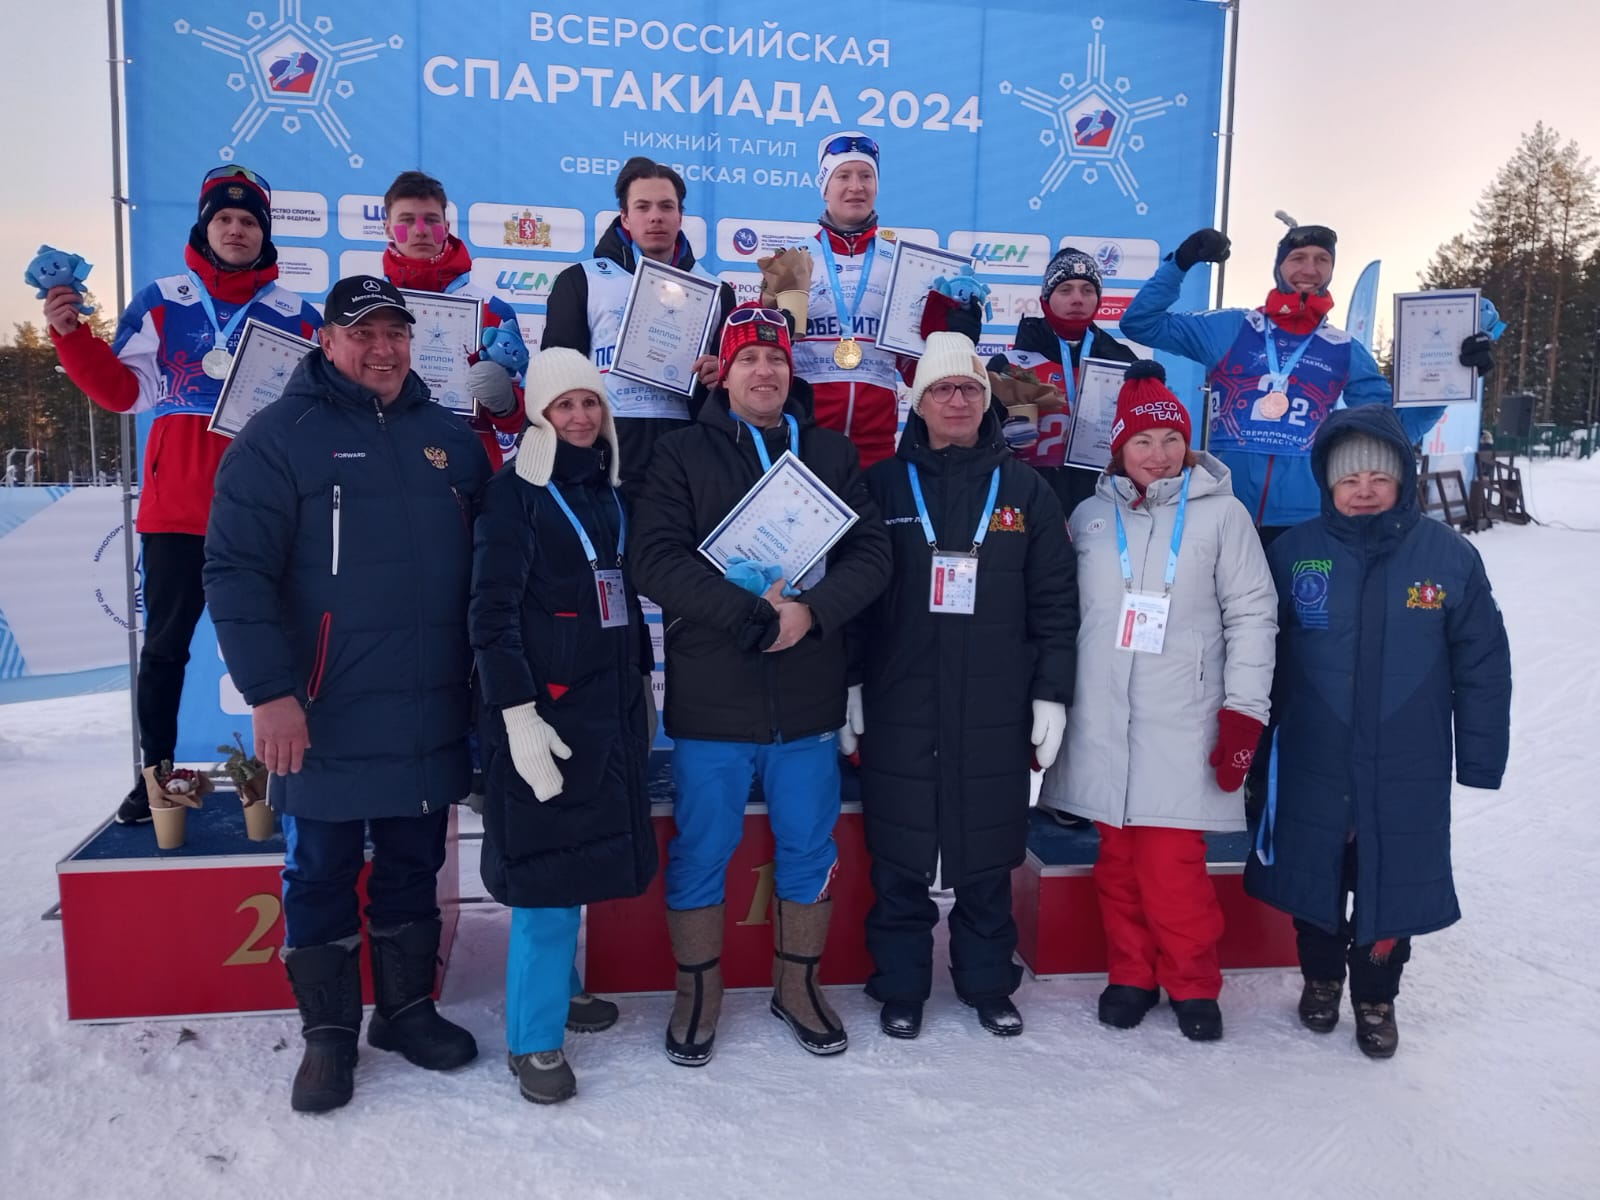 Команда Нижнего Новгорода победила в командном спринте